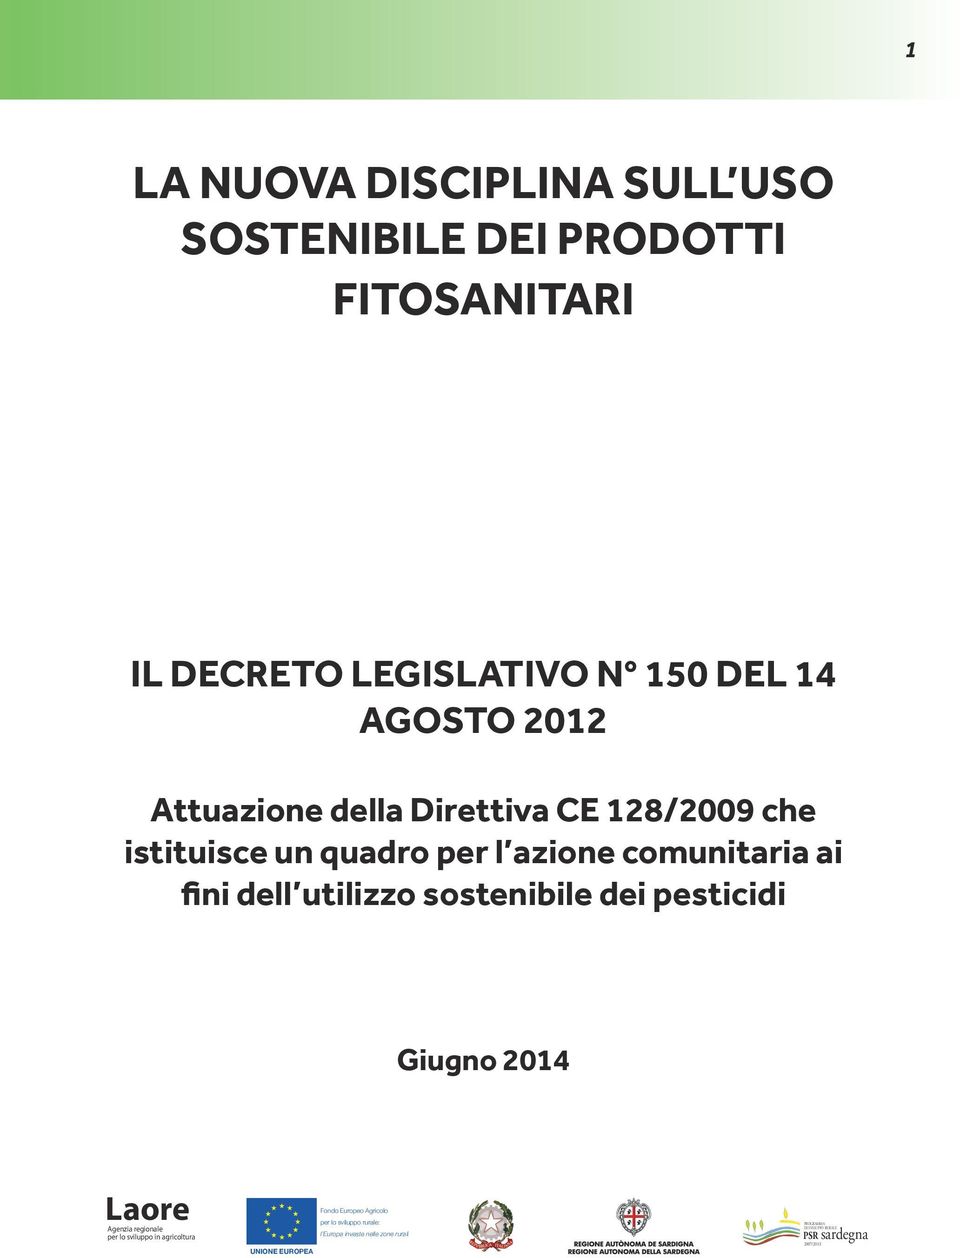 Attuazione della Direttiva CE 128/2009 che istituisce un quadro